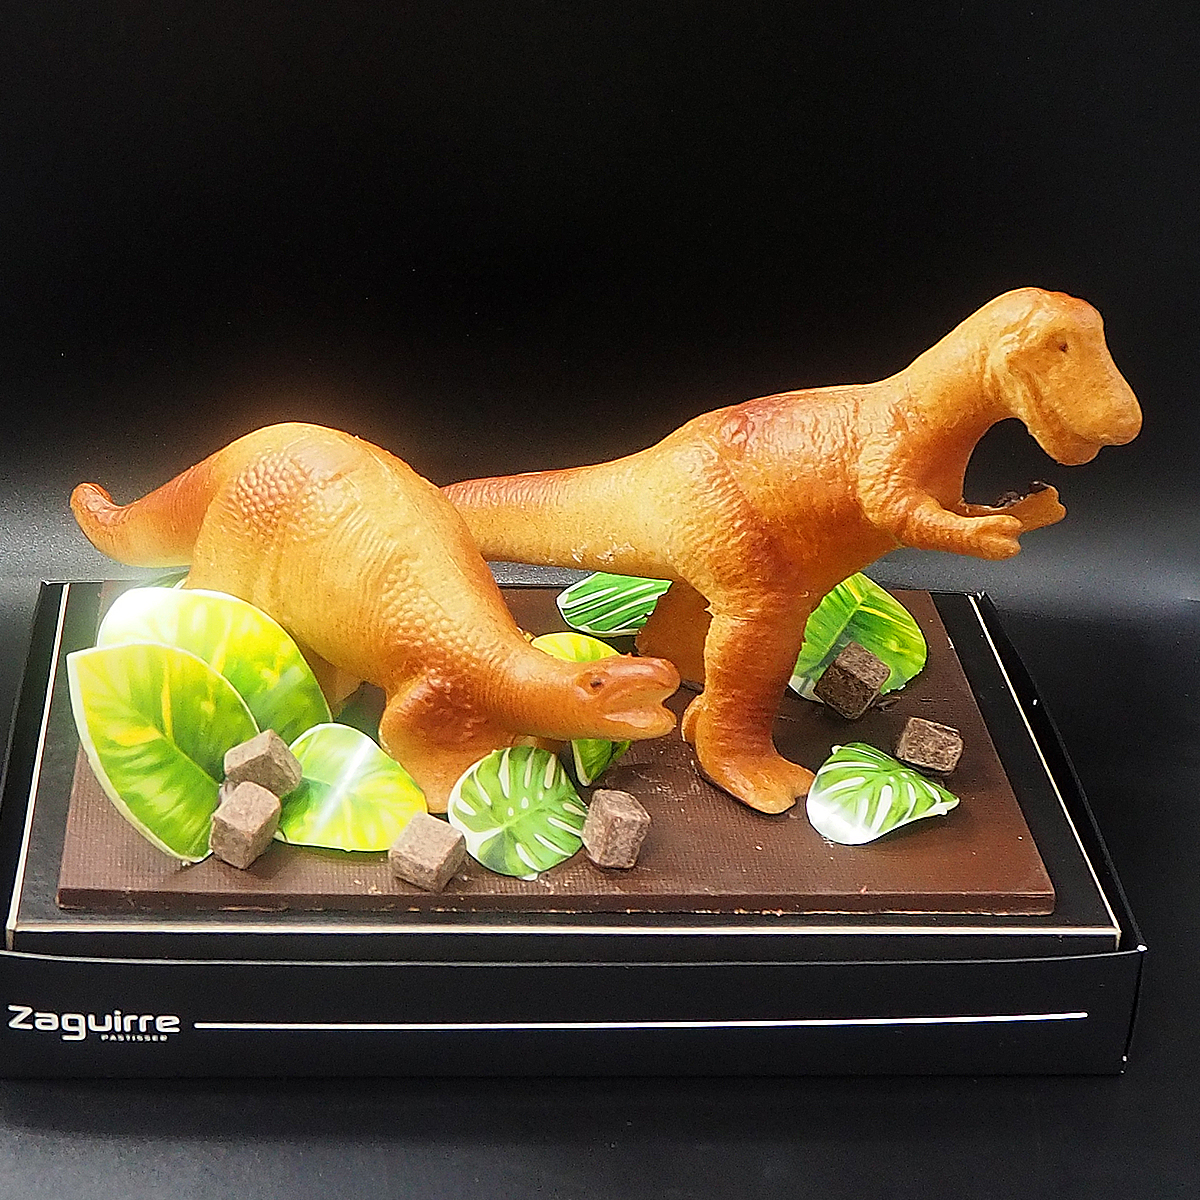 Mona de Pascua de chocolate con forma de dinosaurio elaborada artesanalmente por Zaguirre Pastisser.